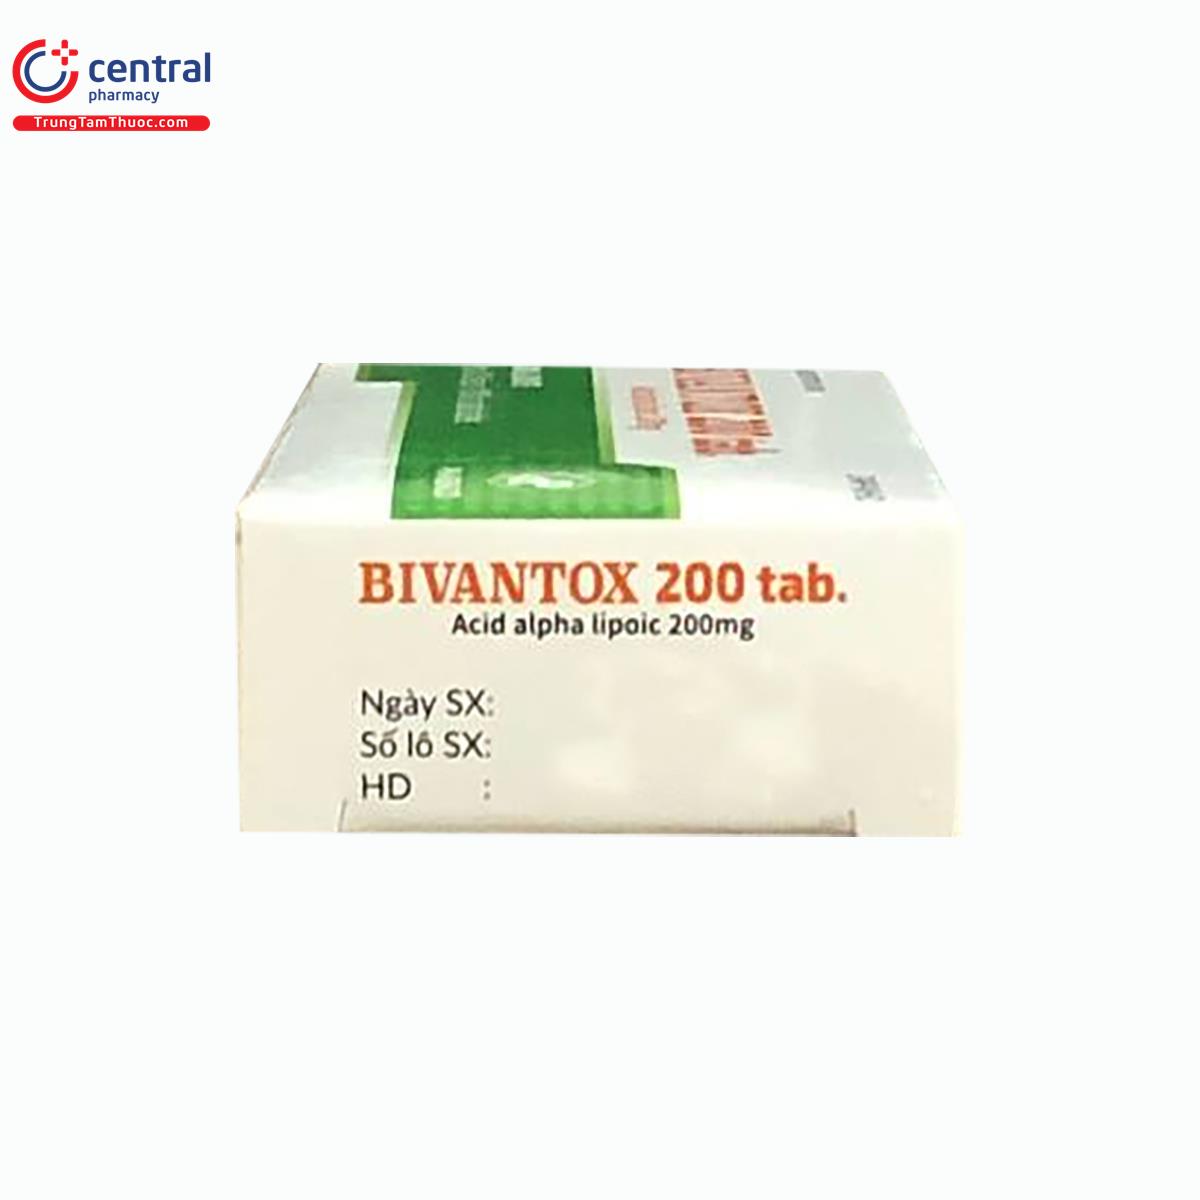 bivantox 200 tab 4 S7161